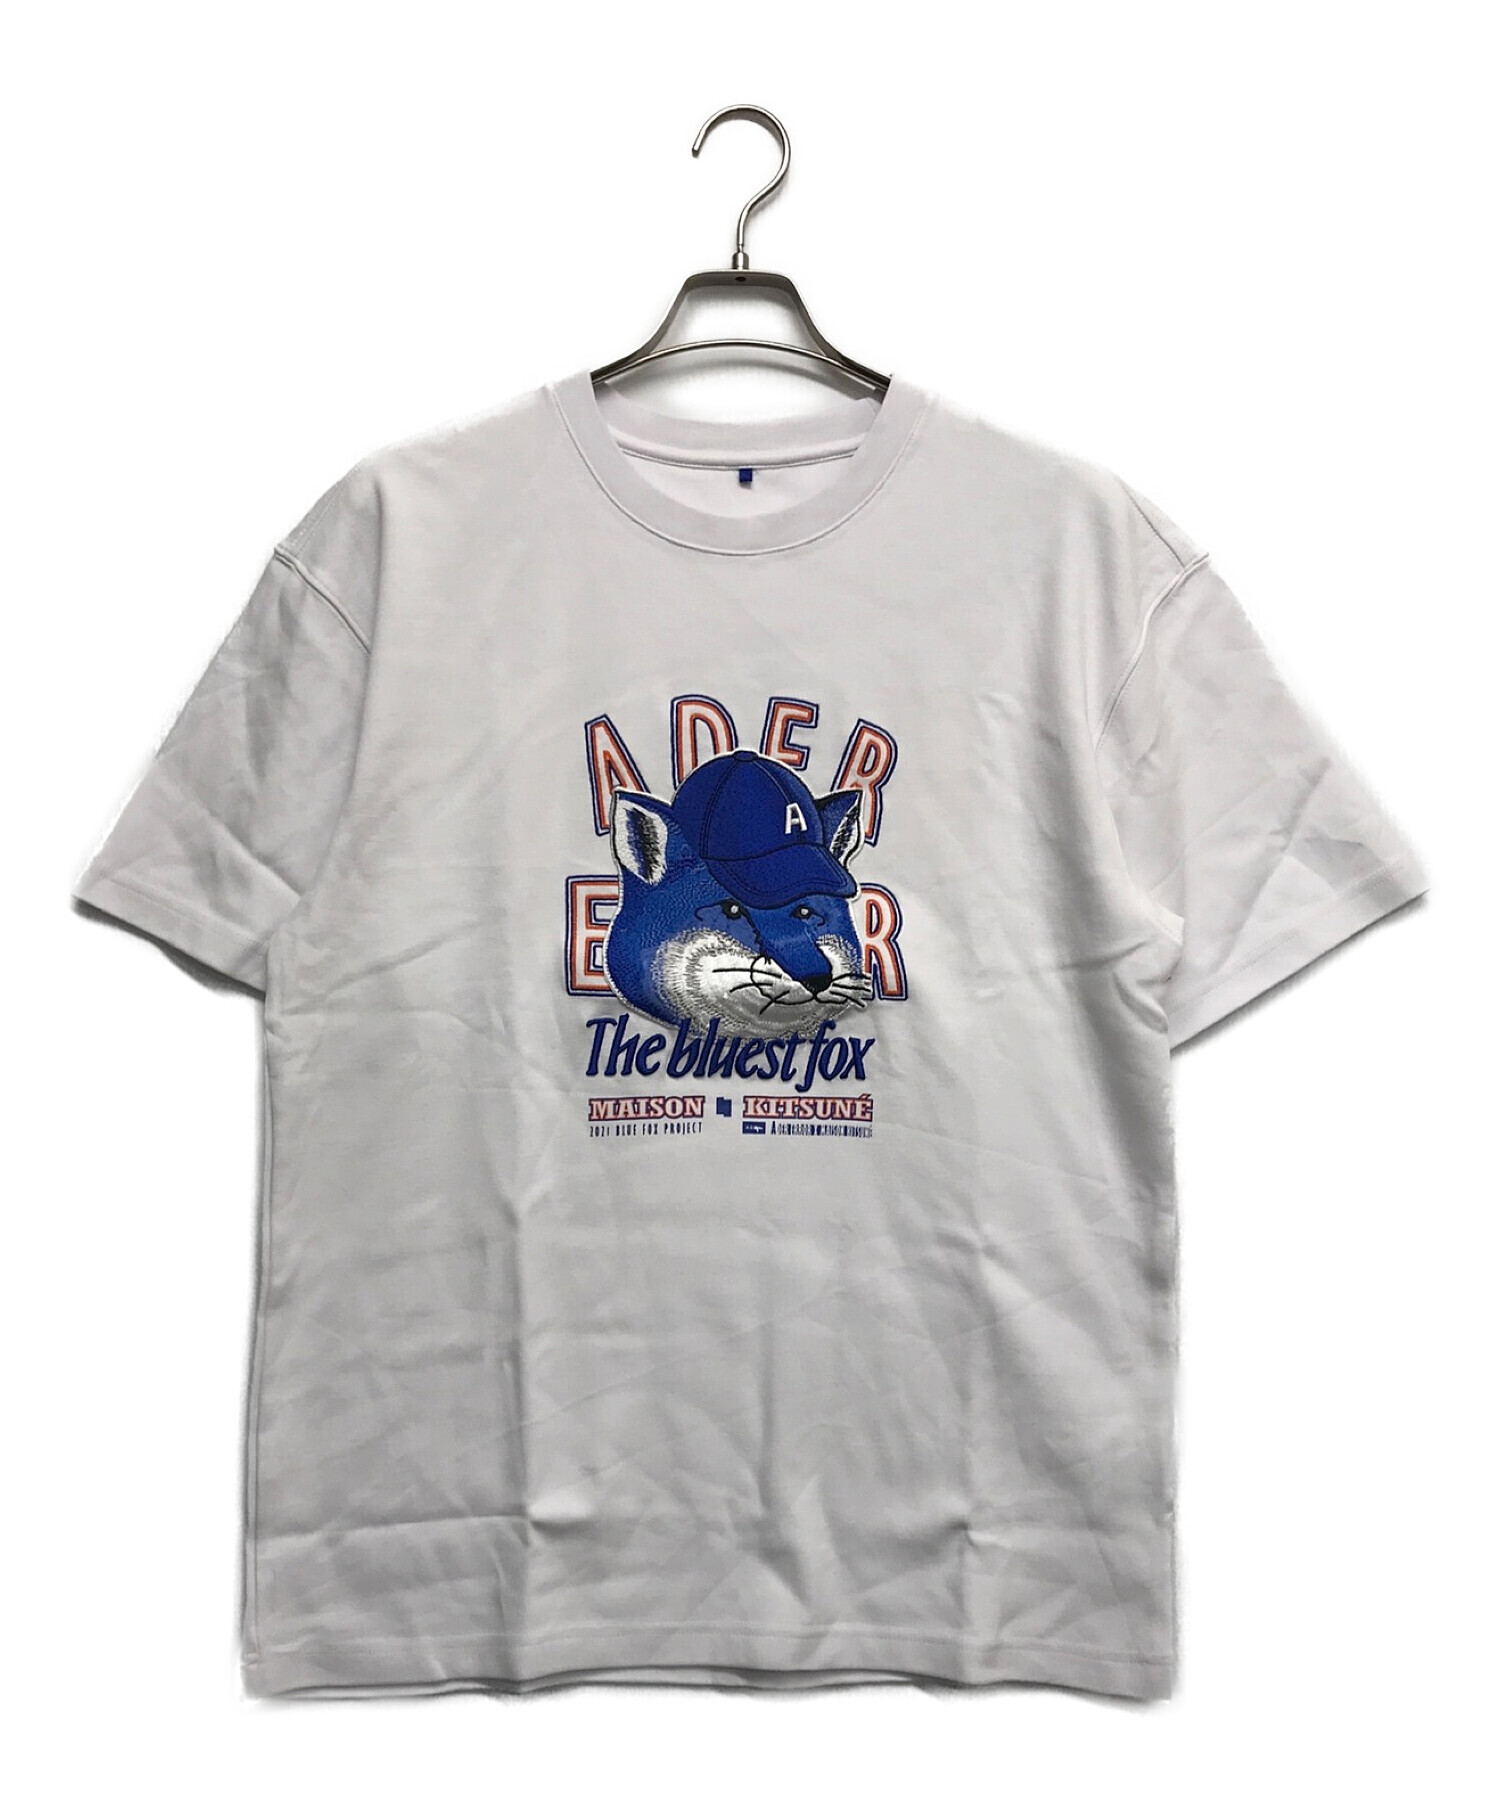 国内新品 メゾンキツネ × アーダーエラー BLUE FOX Tシャツ 2020